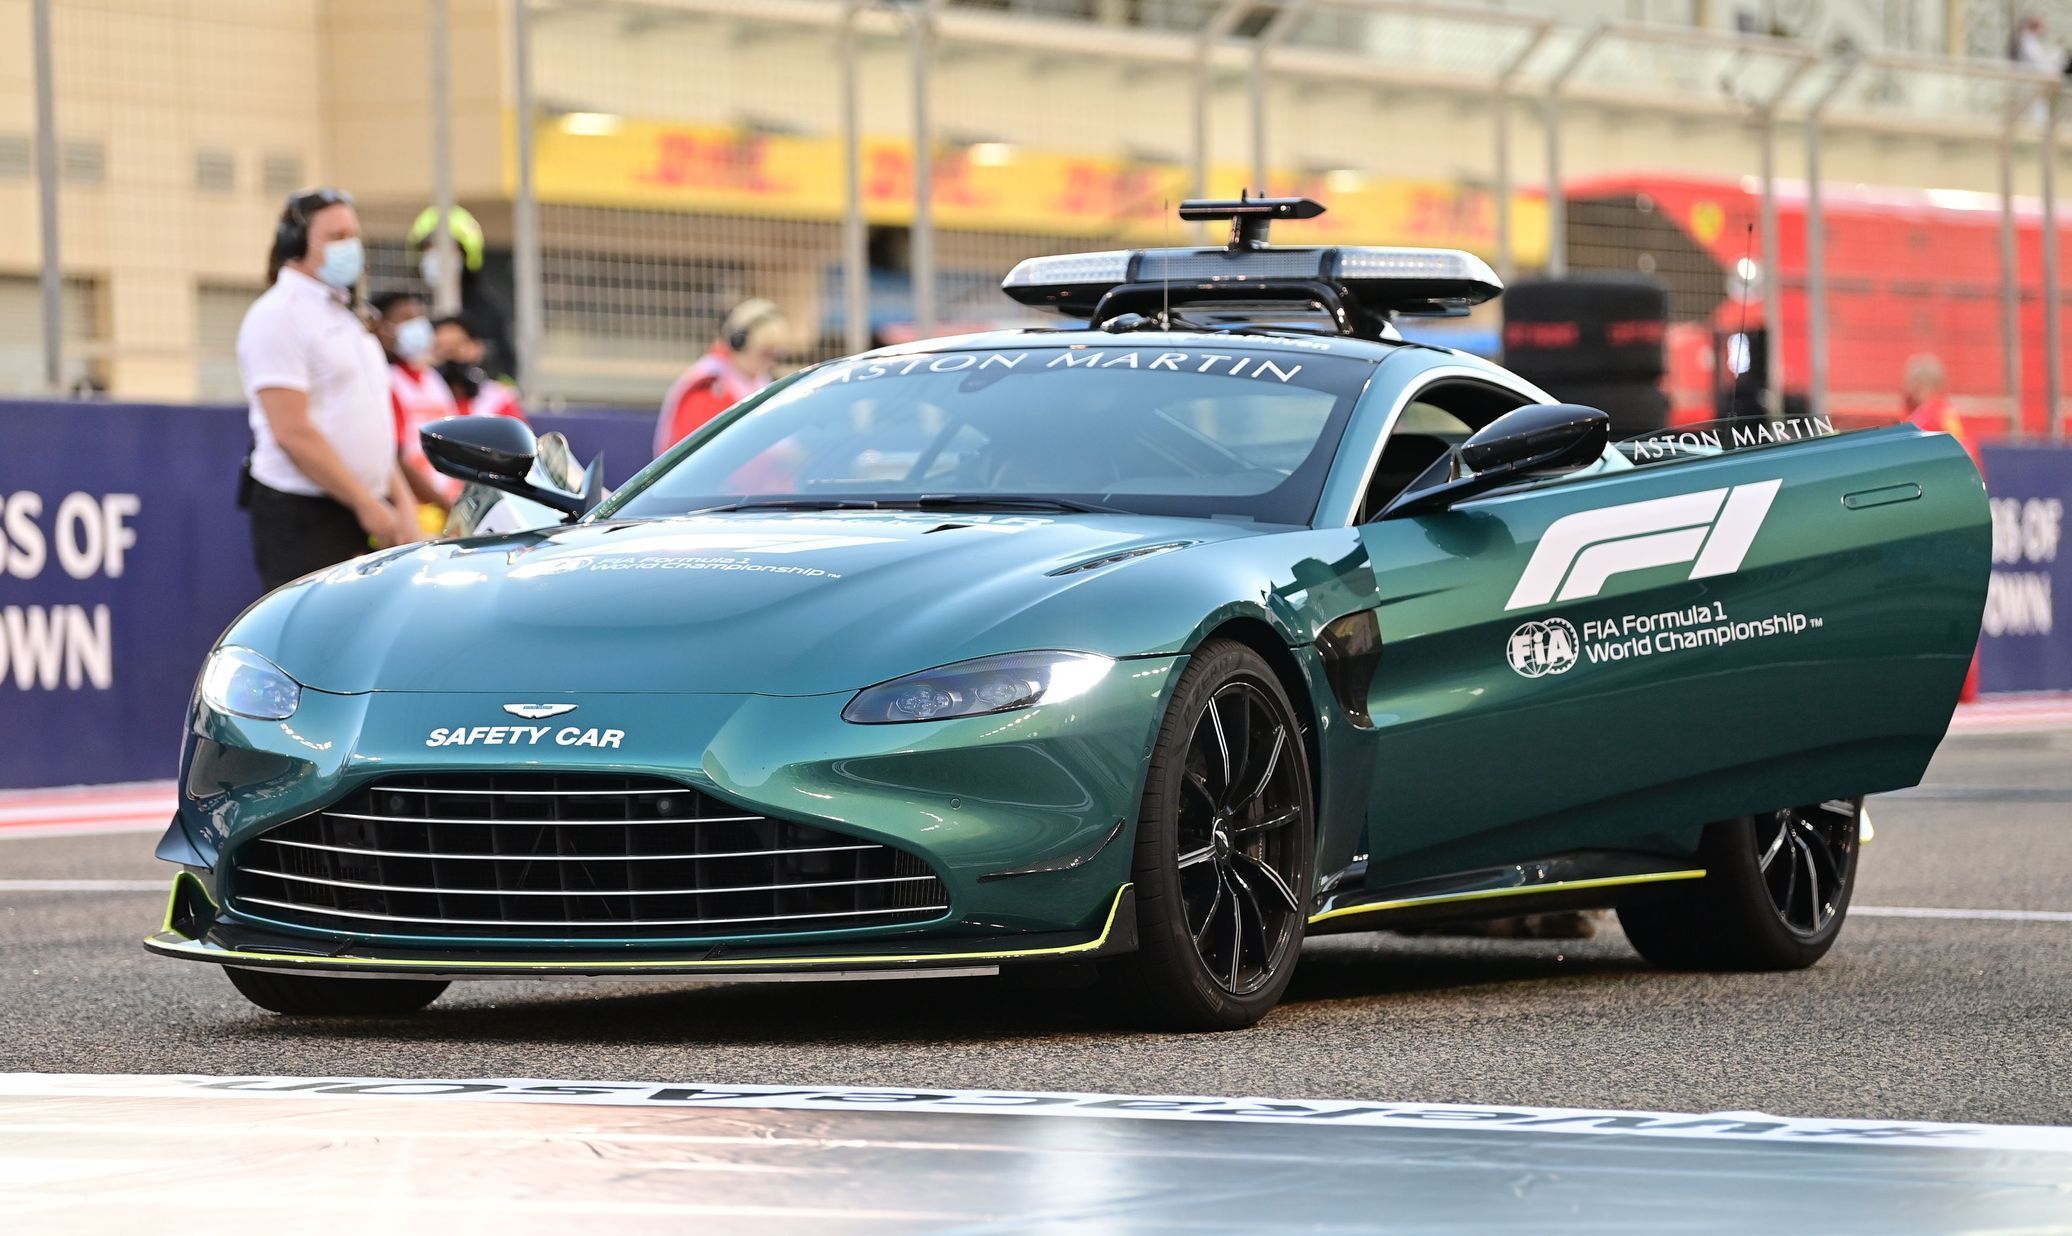 Safety car Aston Martin při Velké ceně Bahrajnu 2021